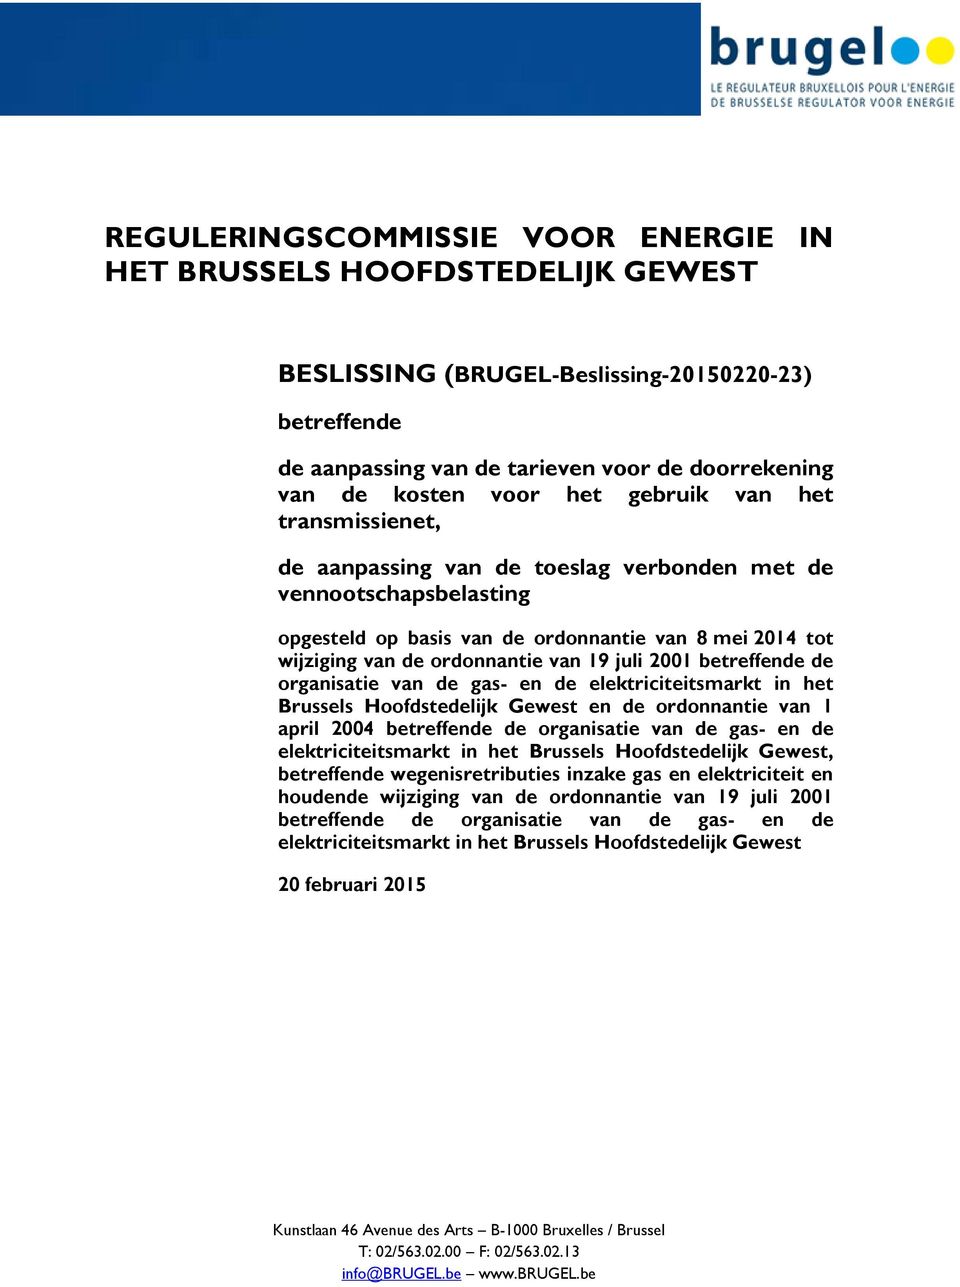 juli 2001 betreffende de organisatie van de gas- en de elektriciteitsmarkt in het Brussels Hoofdstedelijk Gewest en de ordonnantie van 1 april 2004 betreffende de organisatie van de gas- en de